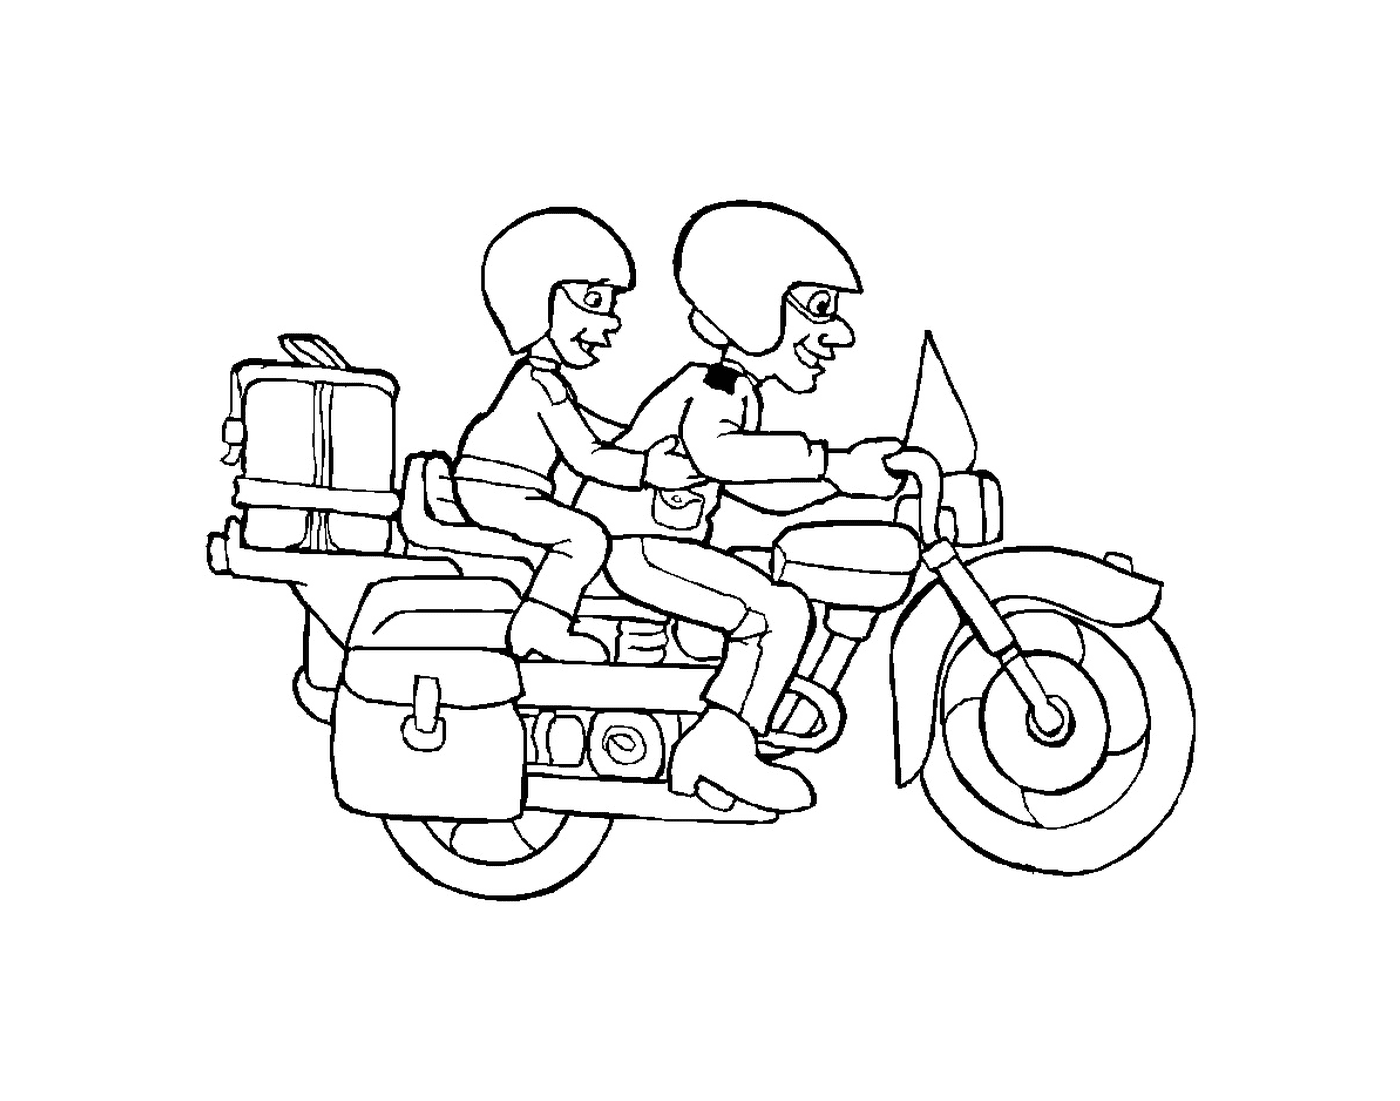  Duas pessoas em uma motocicleta 